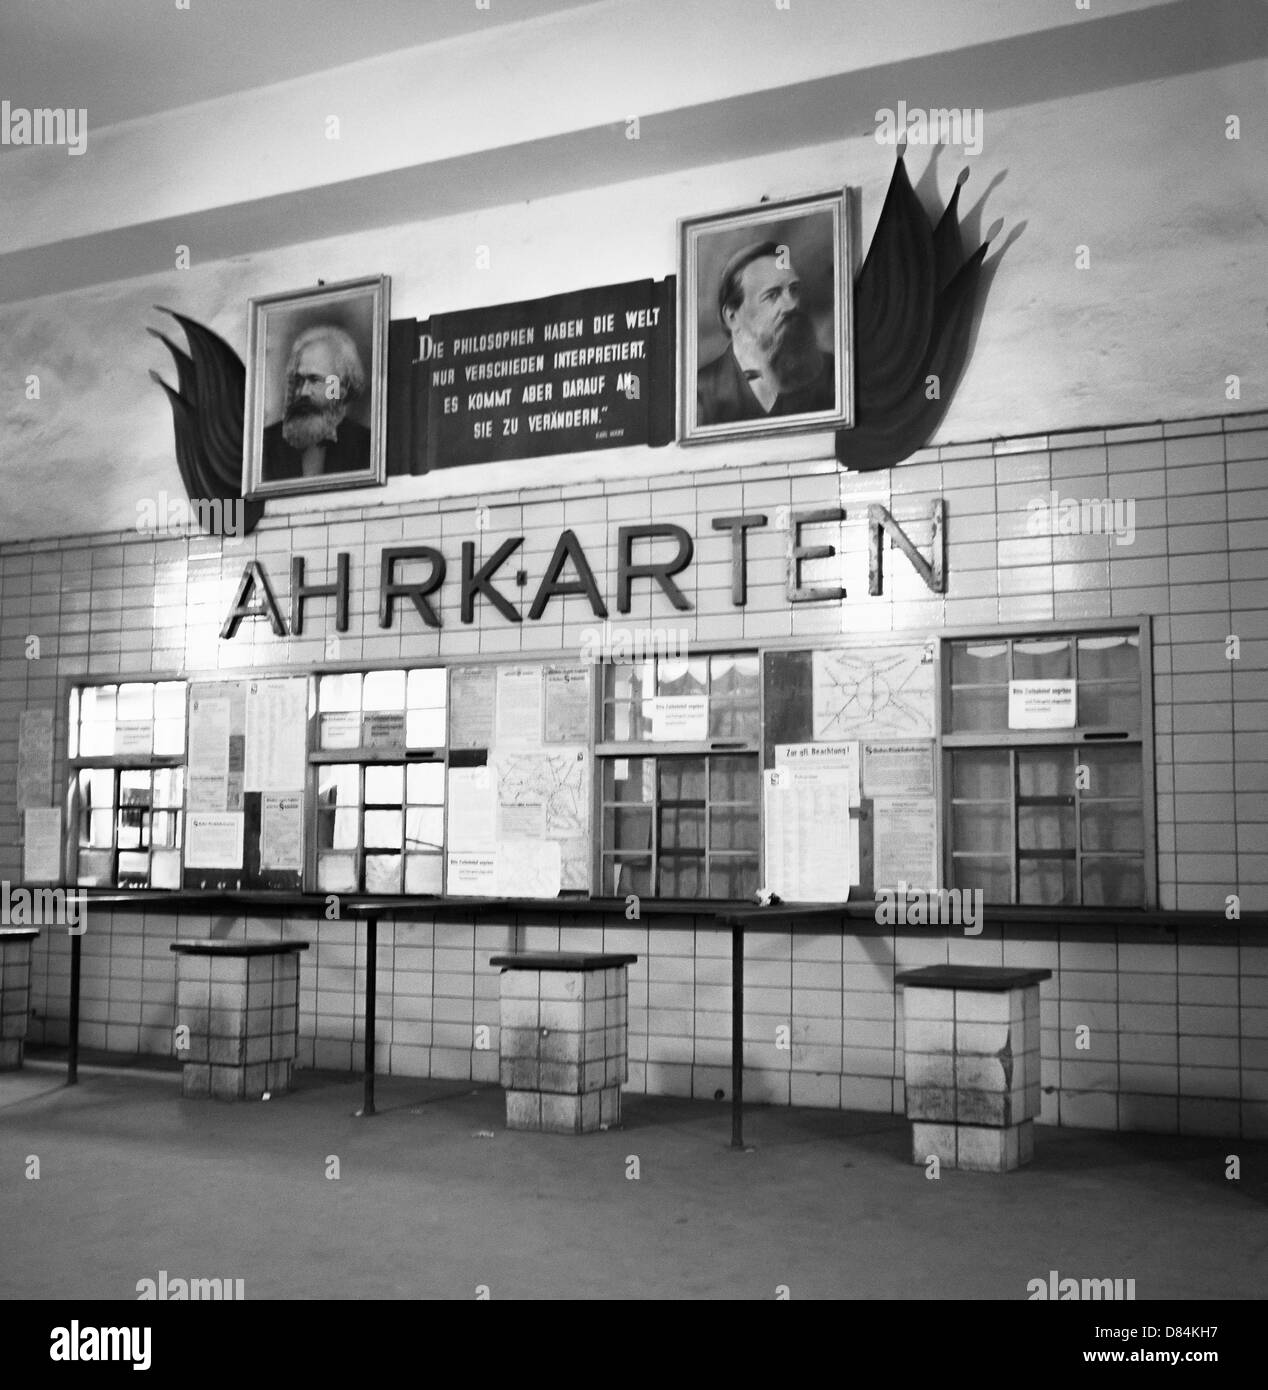 Mars 1959, billet de bureau dans une ancienne gare de S-Bahn, Berlin est, Allemagne Europe Banque D'Images